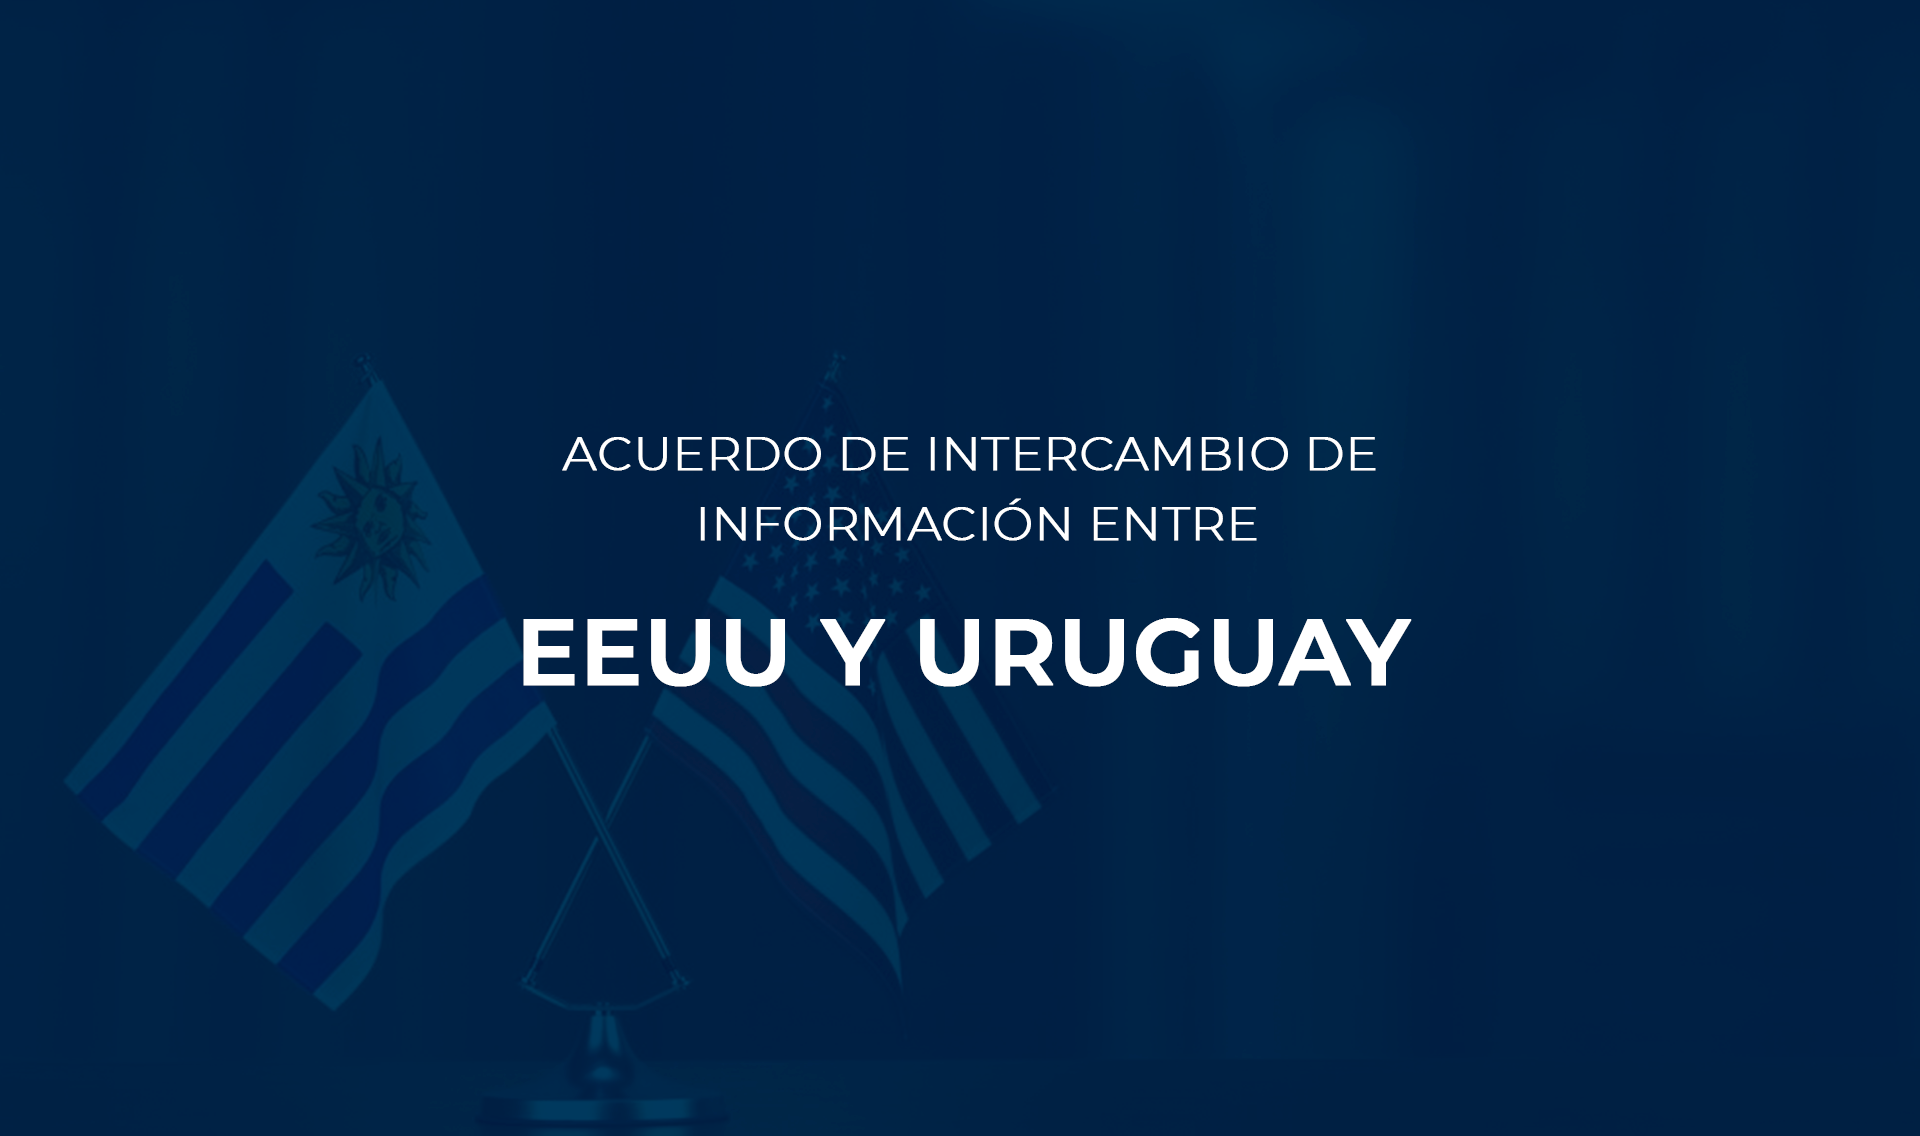 INTERCAMBIO DE INFORMACIÓN ENTRE EEUU Y URUGUAY